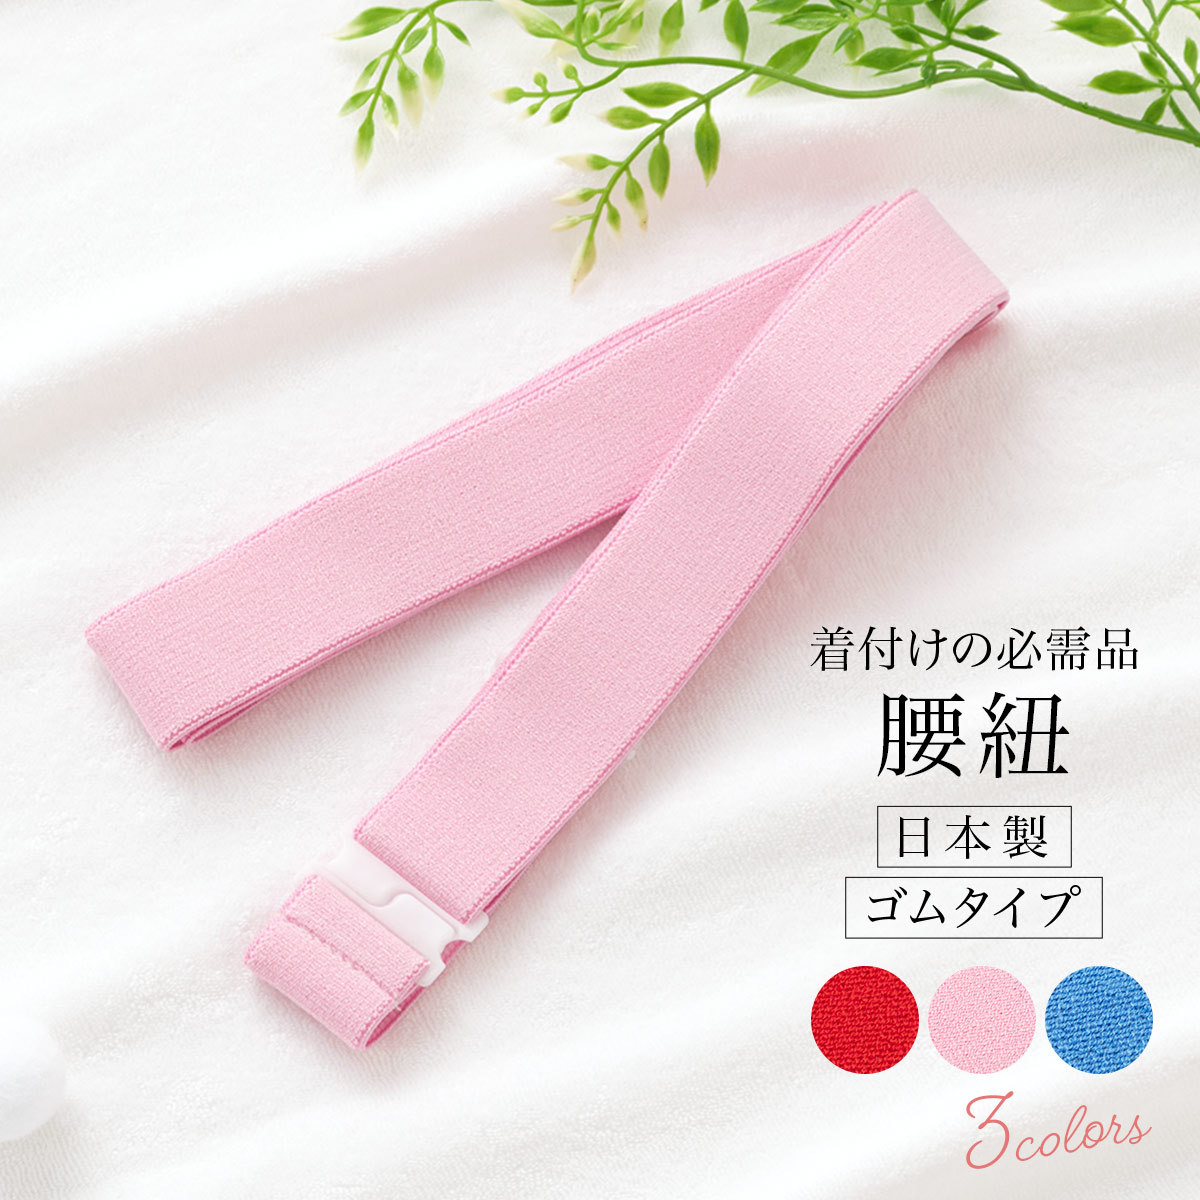 腰紐 ゴムベルト 着付け小物 シンプル 日本製 ゴム腰紐 あづま姿 着物 浴衣 ピンク メール便